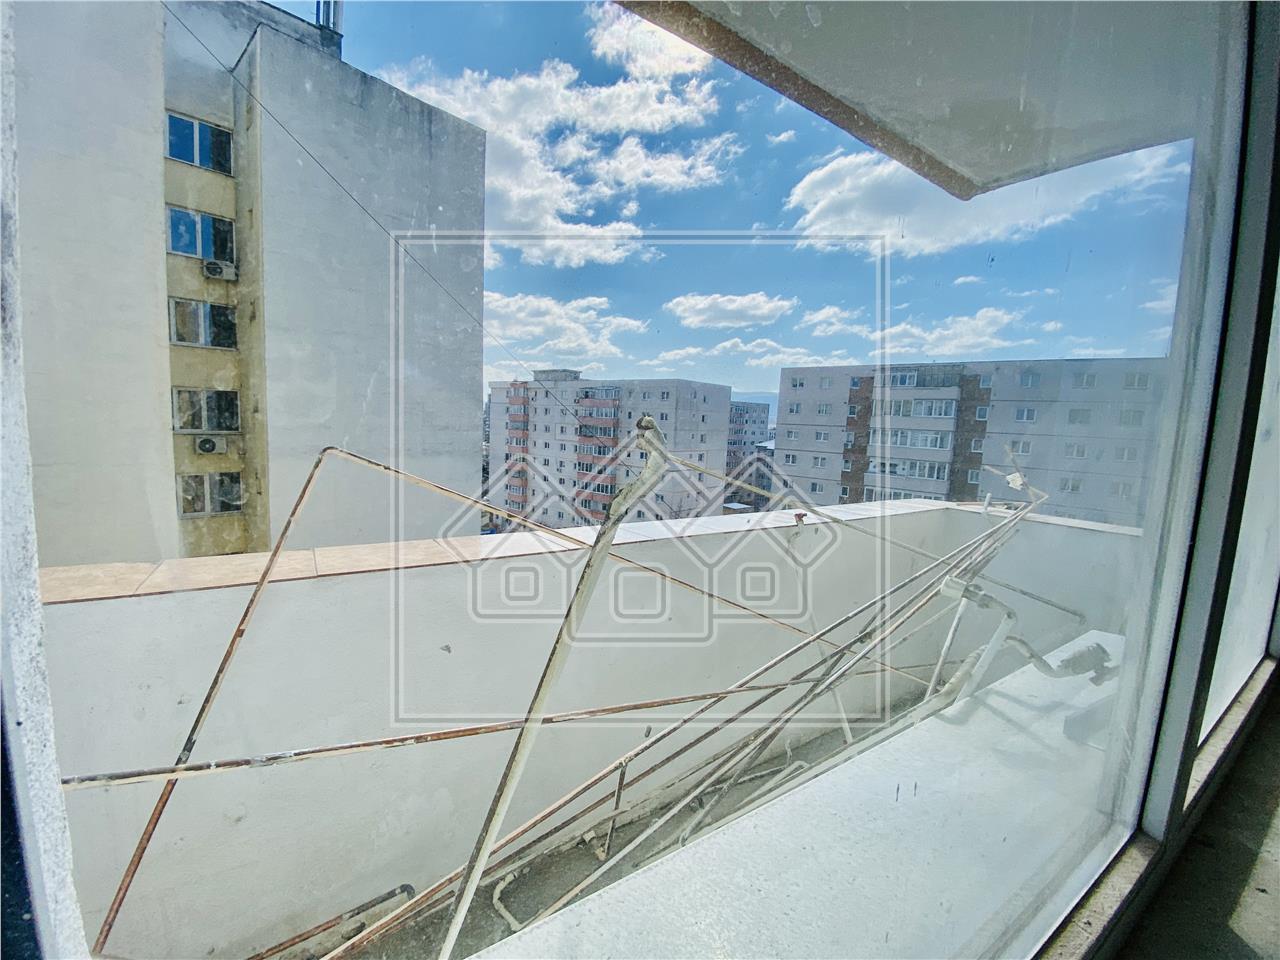 2 Zimmer Wohnung kaufen in Sibiu - Mihai Viteazu Bereich